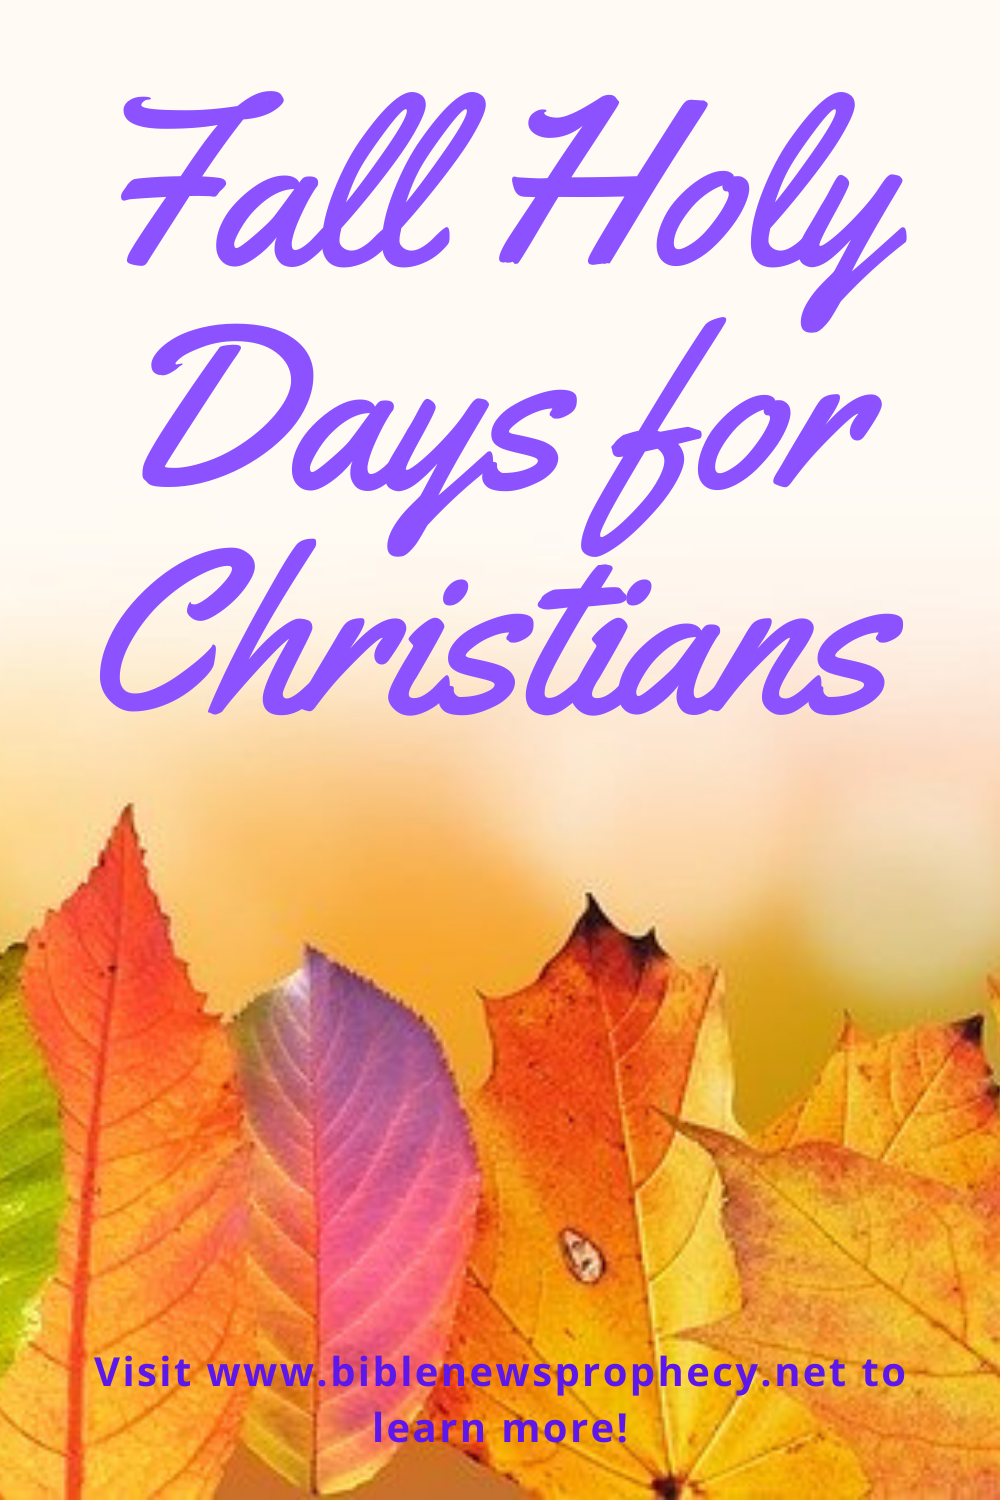 Jaký je nejposvátnější den v křesťanství?